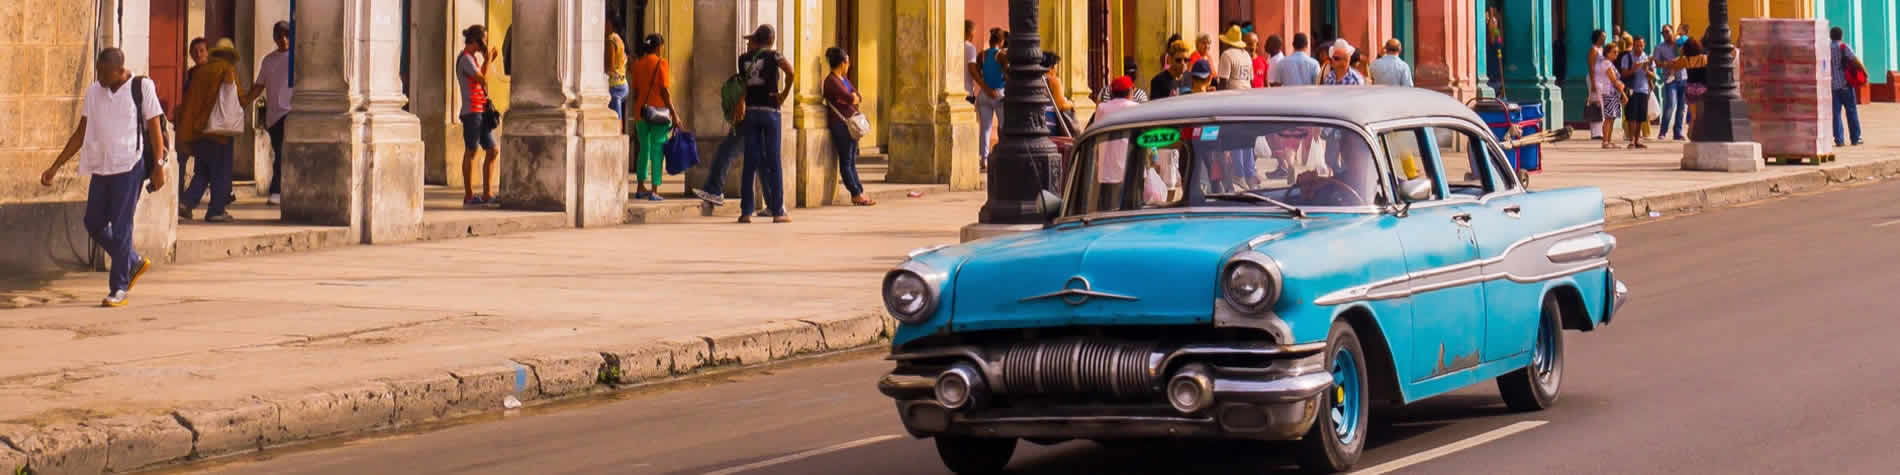 Antiguo carro americano en calle de Habana Vieja